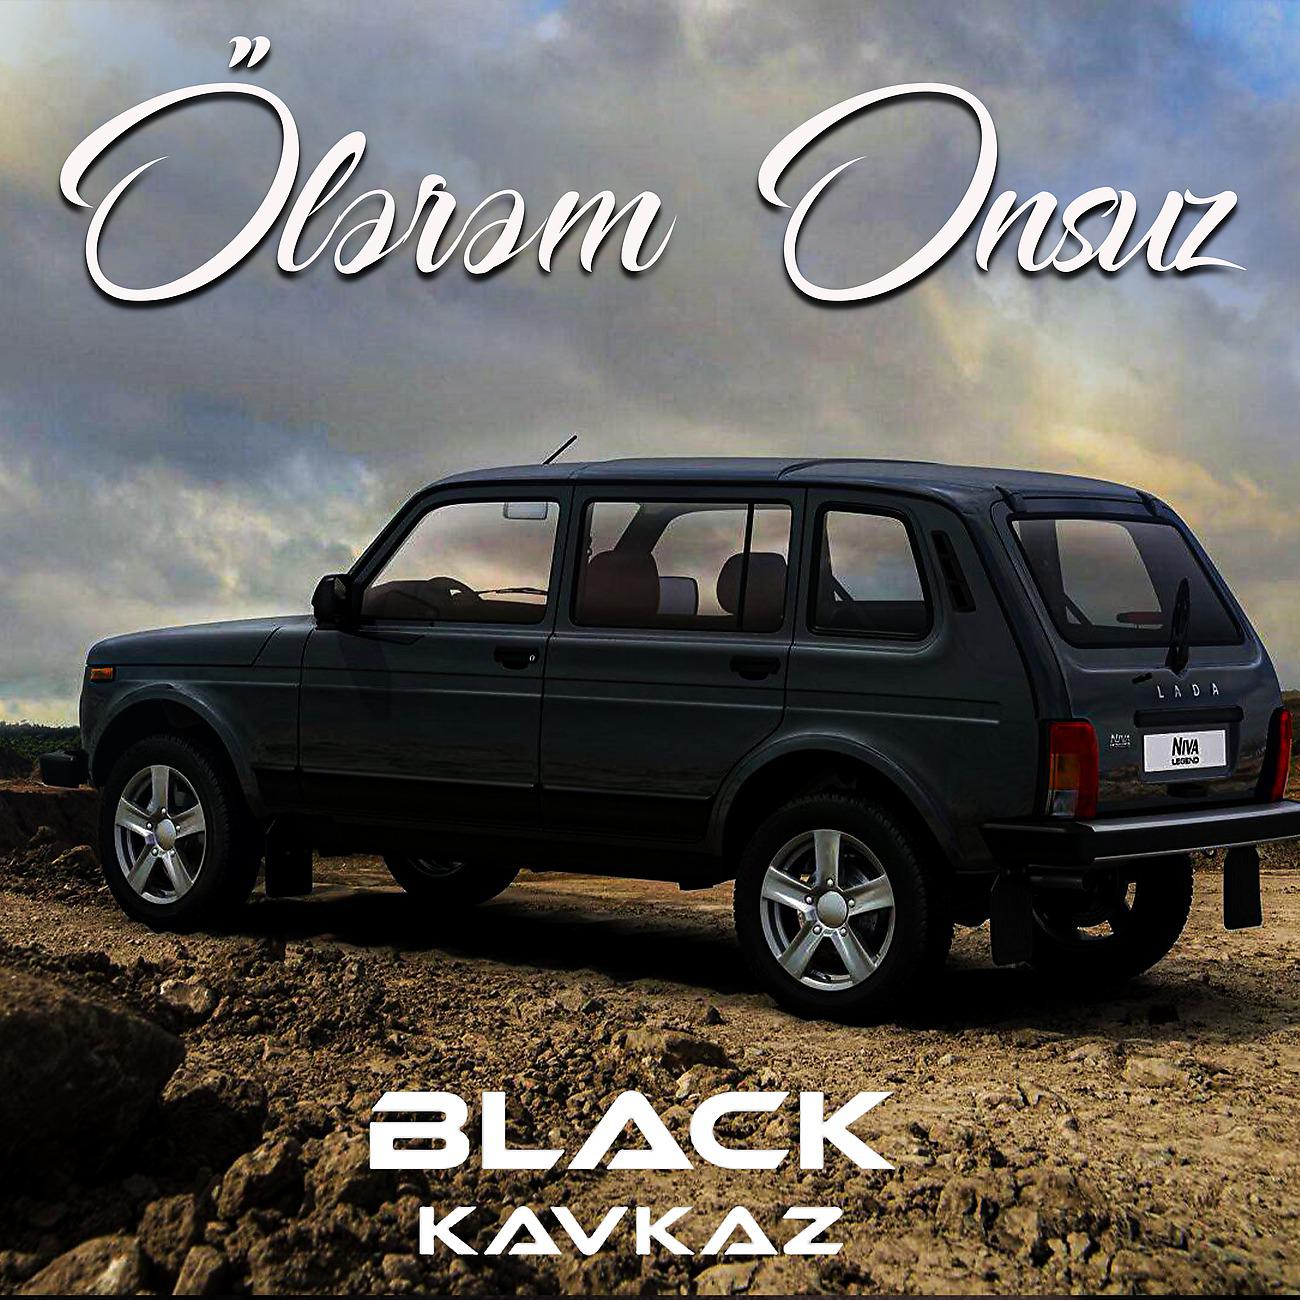 Постер альбома Ölərəm Onsuz